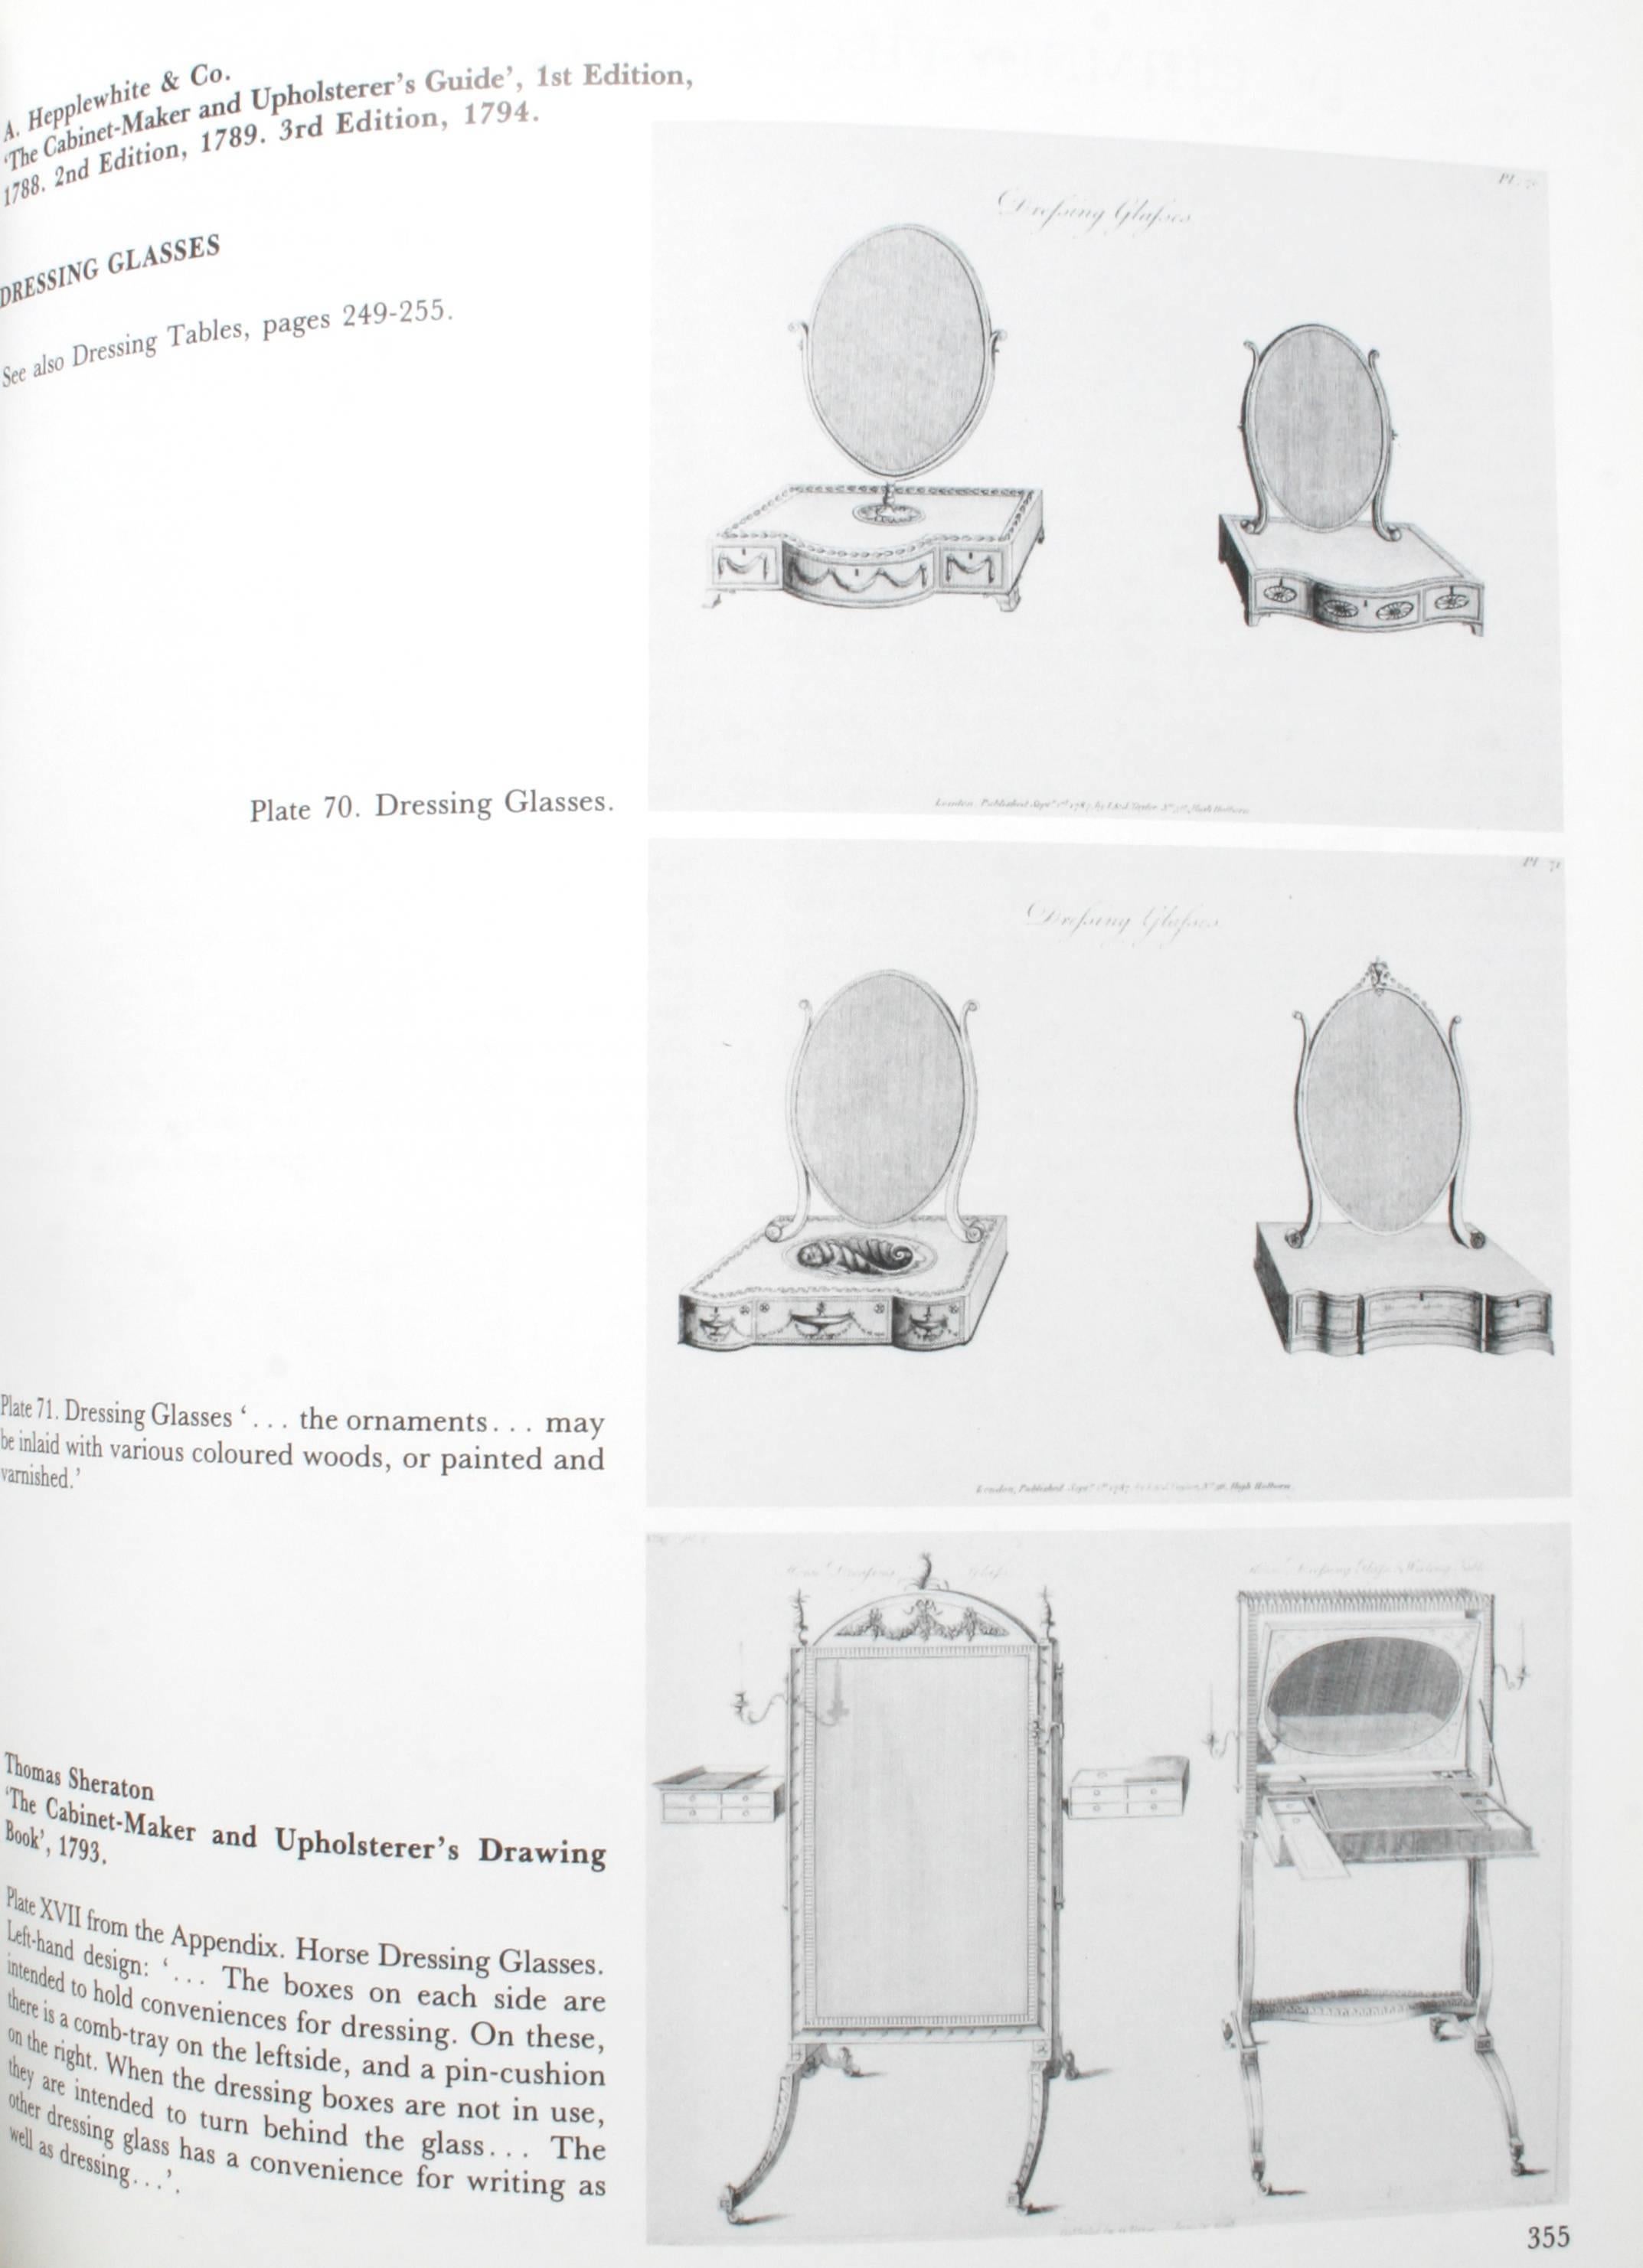 Pictorial Dictionary of British 18th Century Furniture Design 3